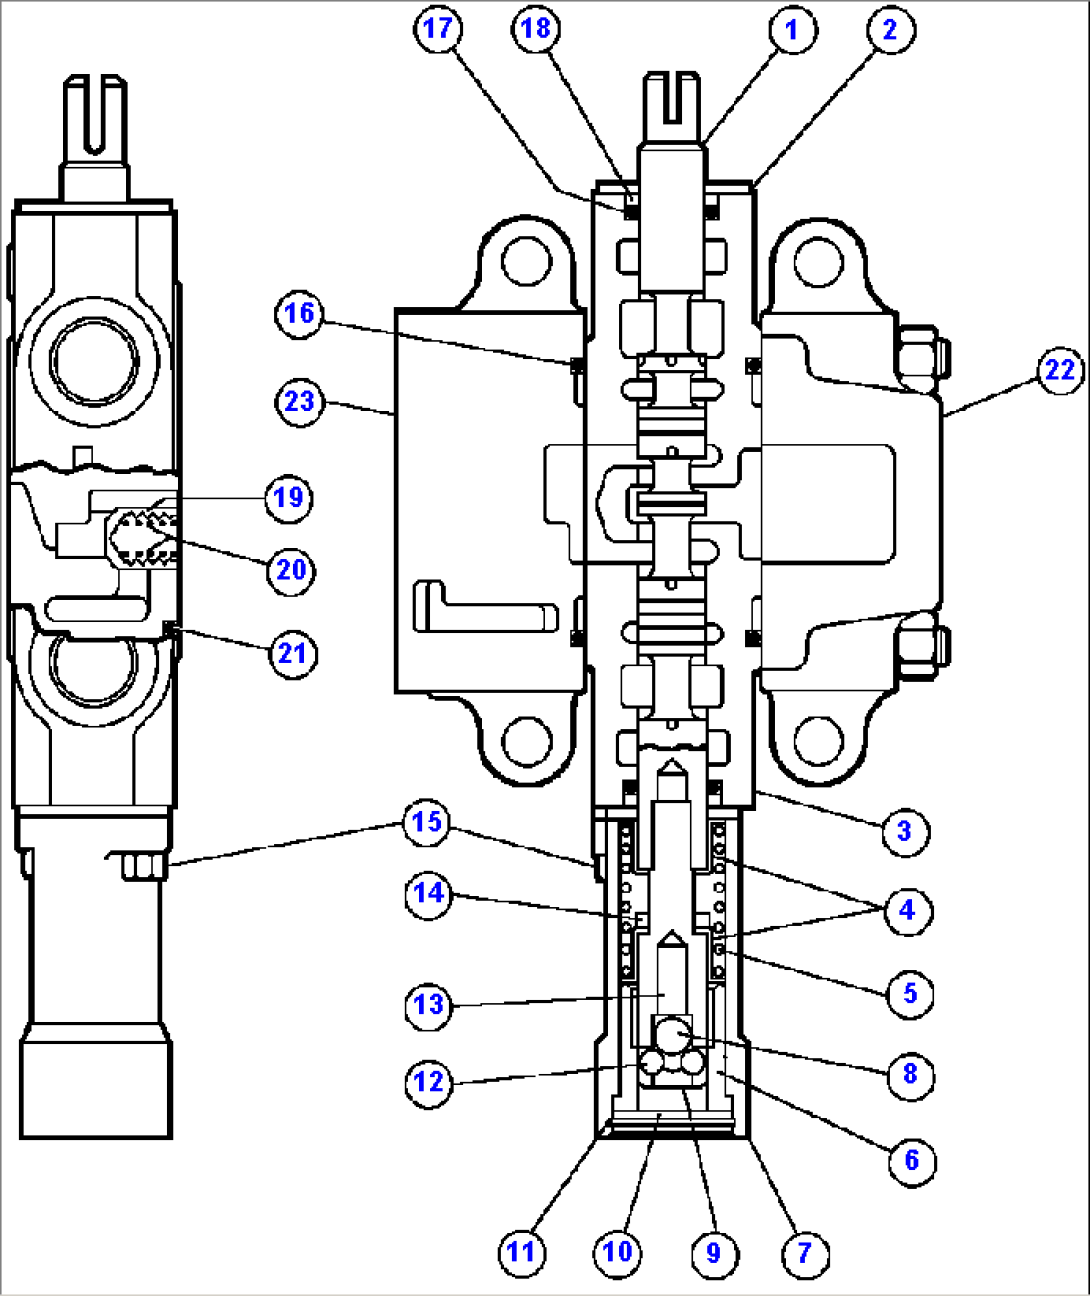 HOIST PILOT VALVE ASSM - 1 (PB8275)